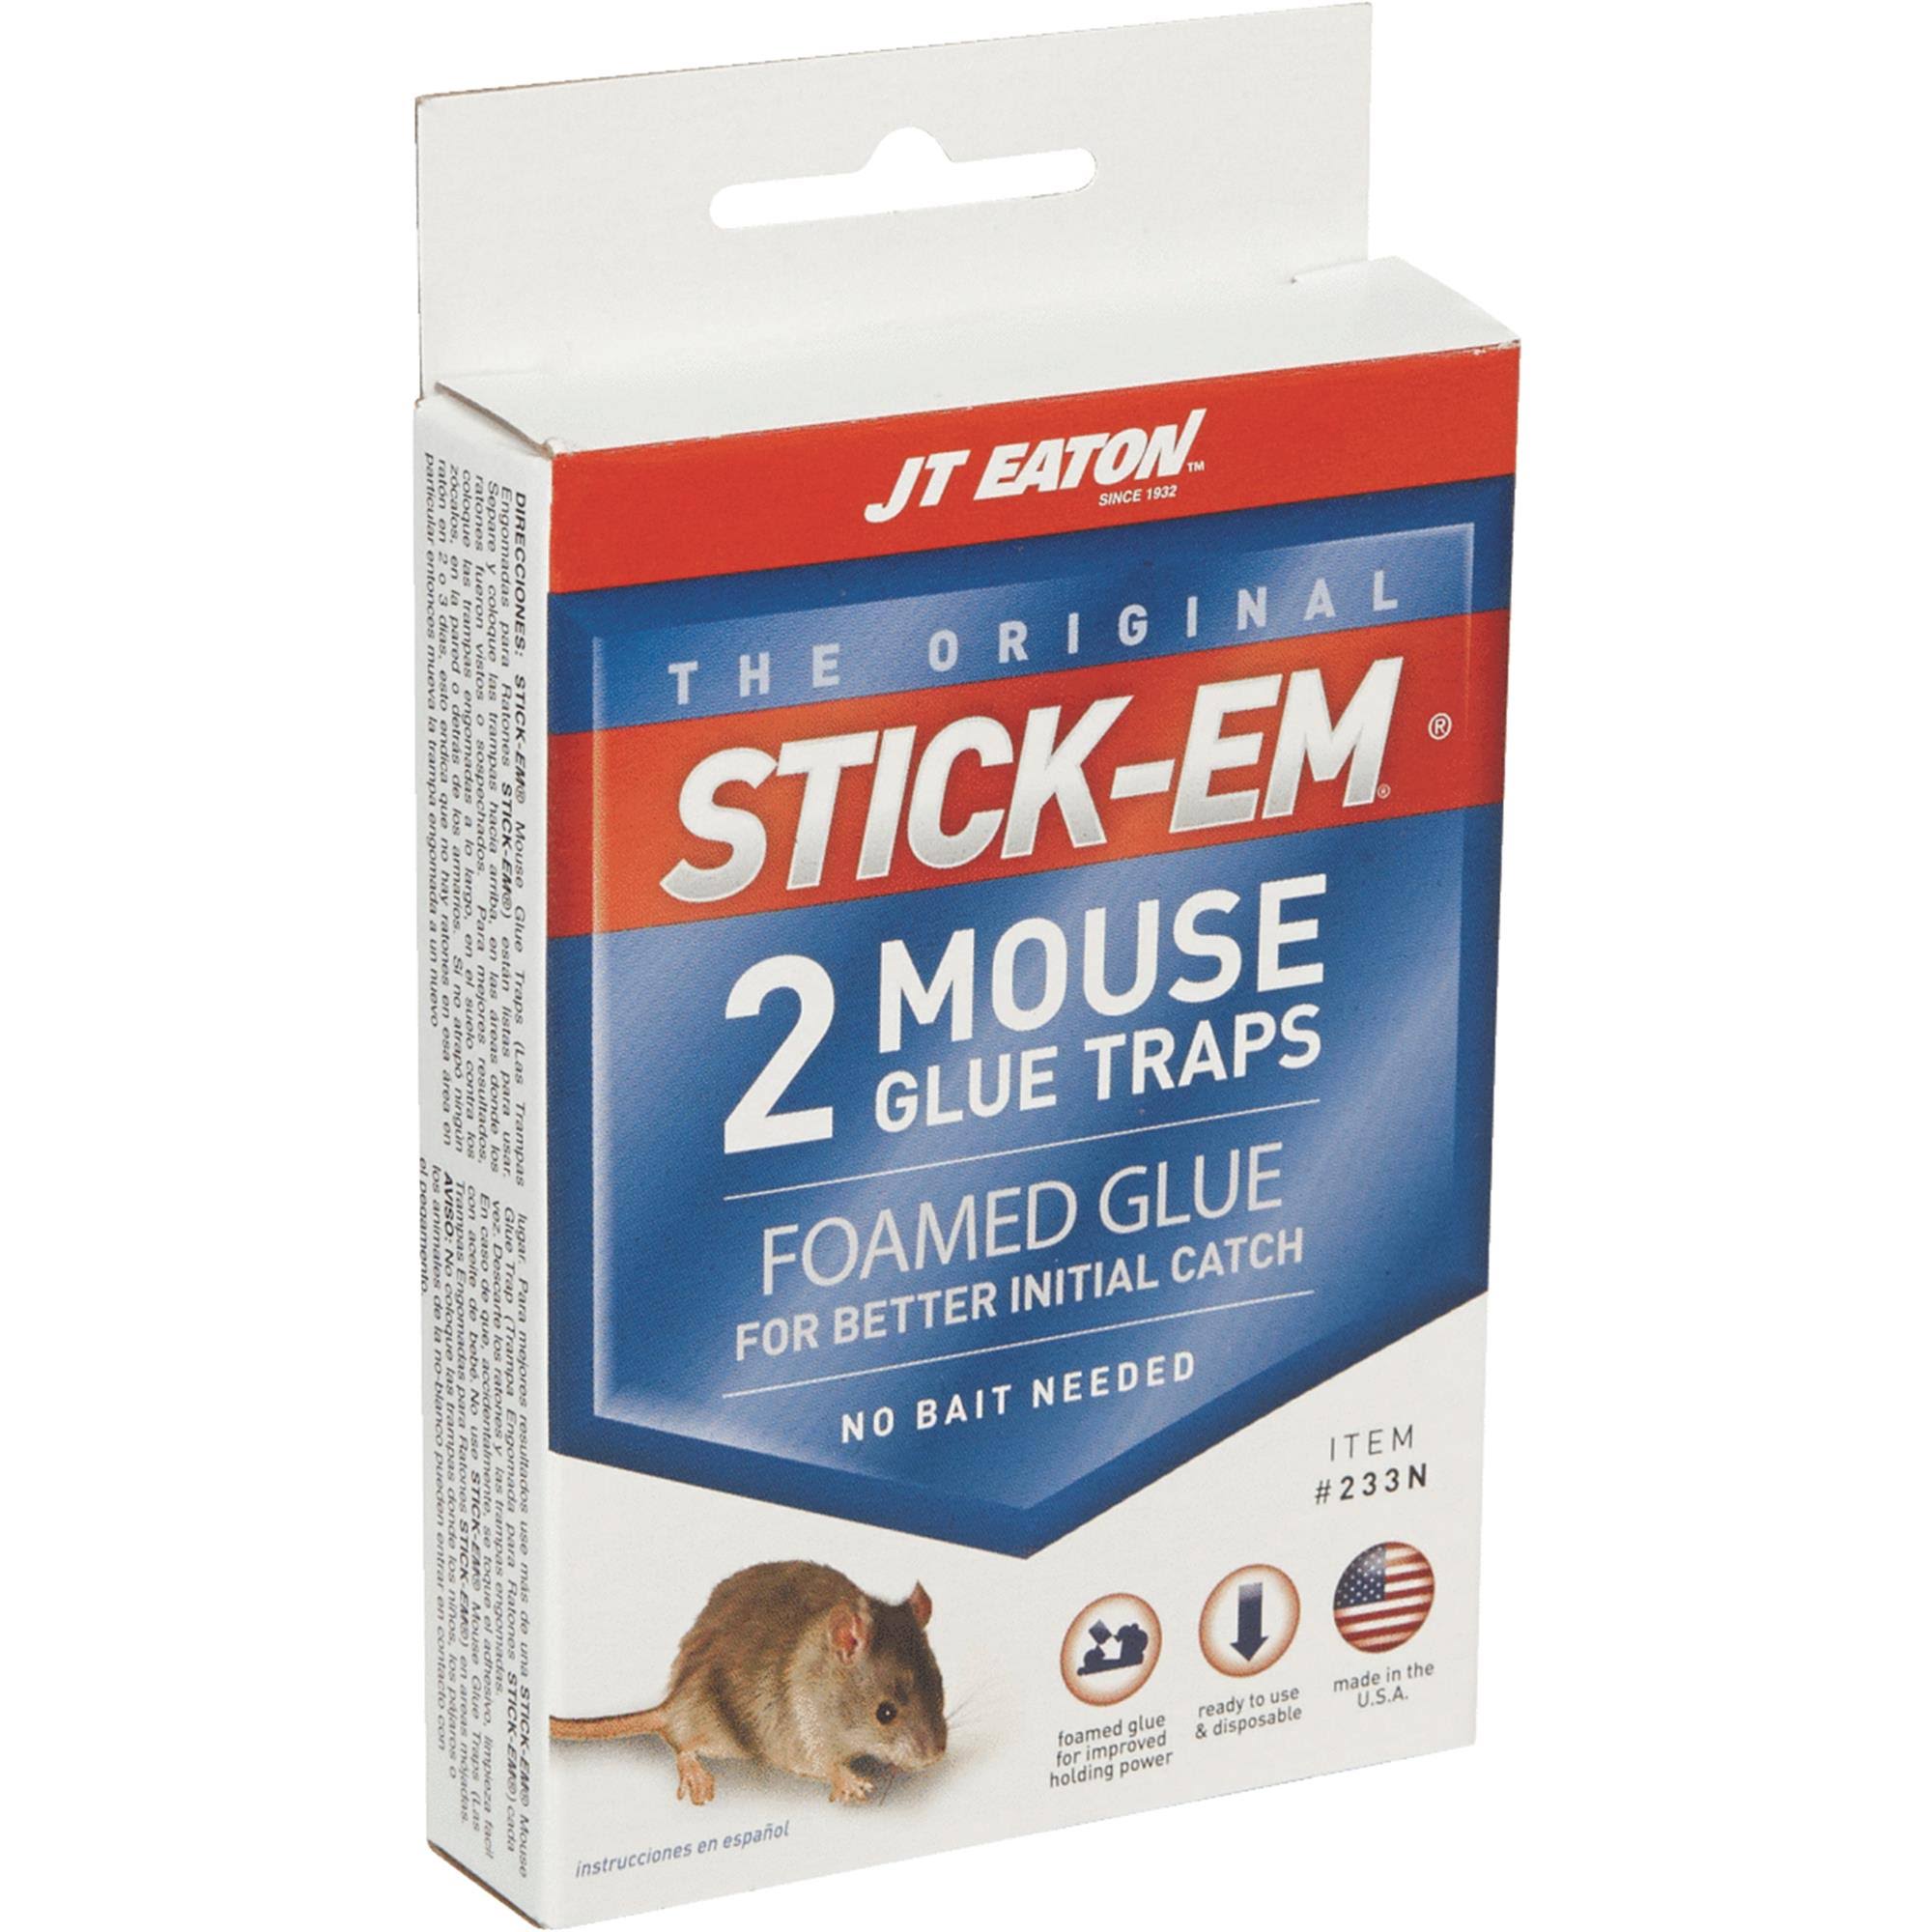 JT Eaton Stick-Em Mouse Trap - 2 Mouse Glue Traps